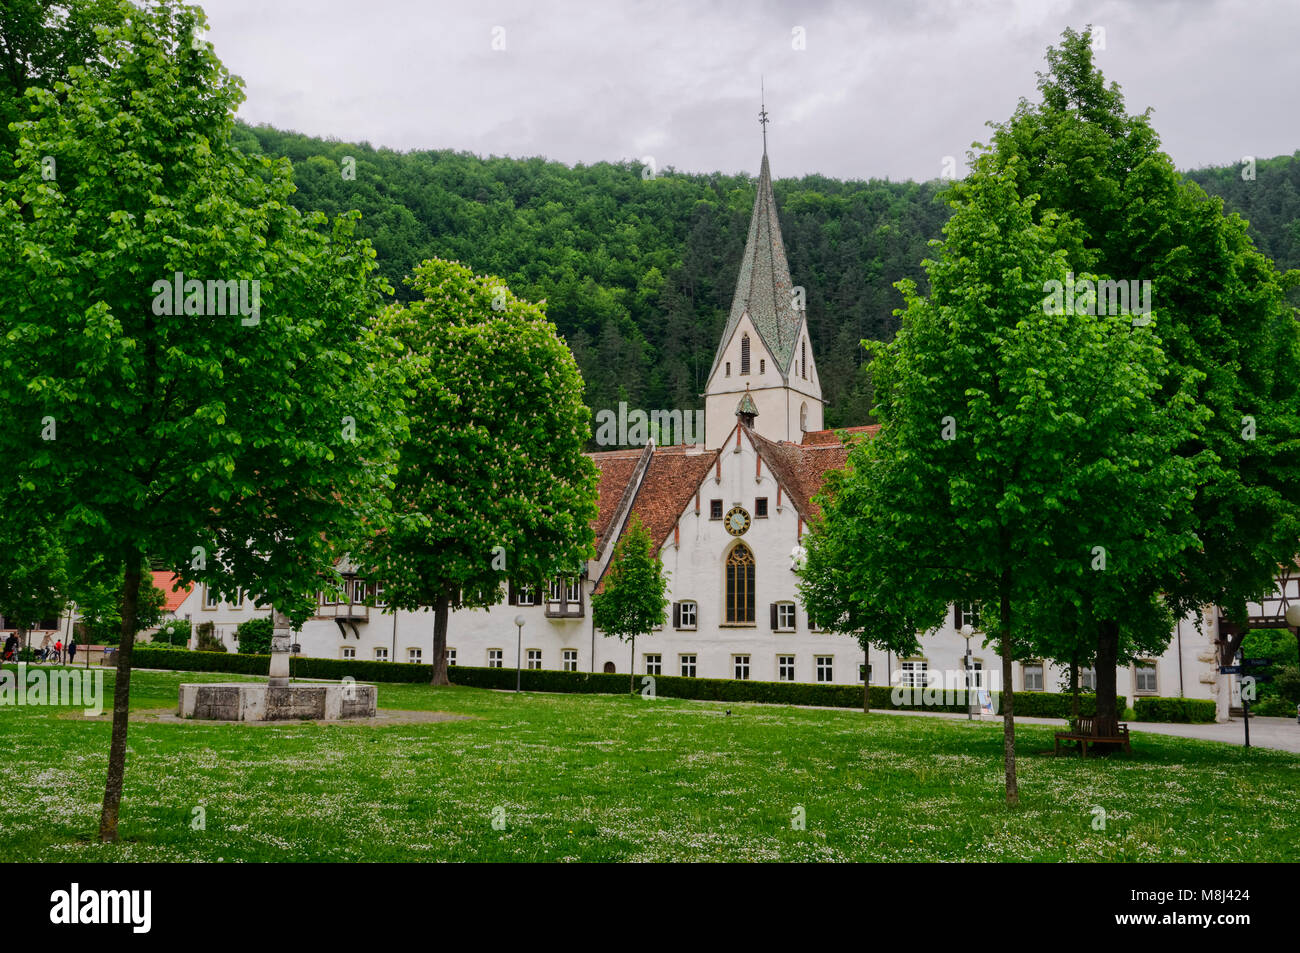 Monastère Blaubeuren, à la limite sud des Alpes soubaises, Alb - Donau District, Bade-Wurtemberg, Allemagne Banque D'Images